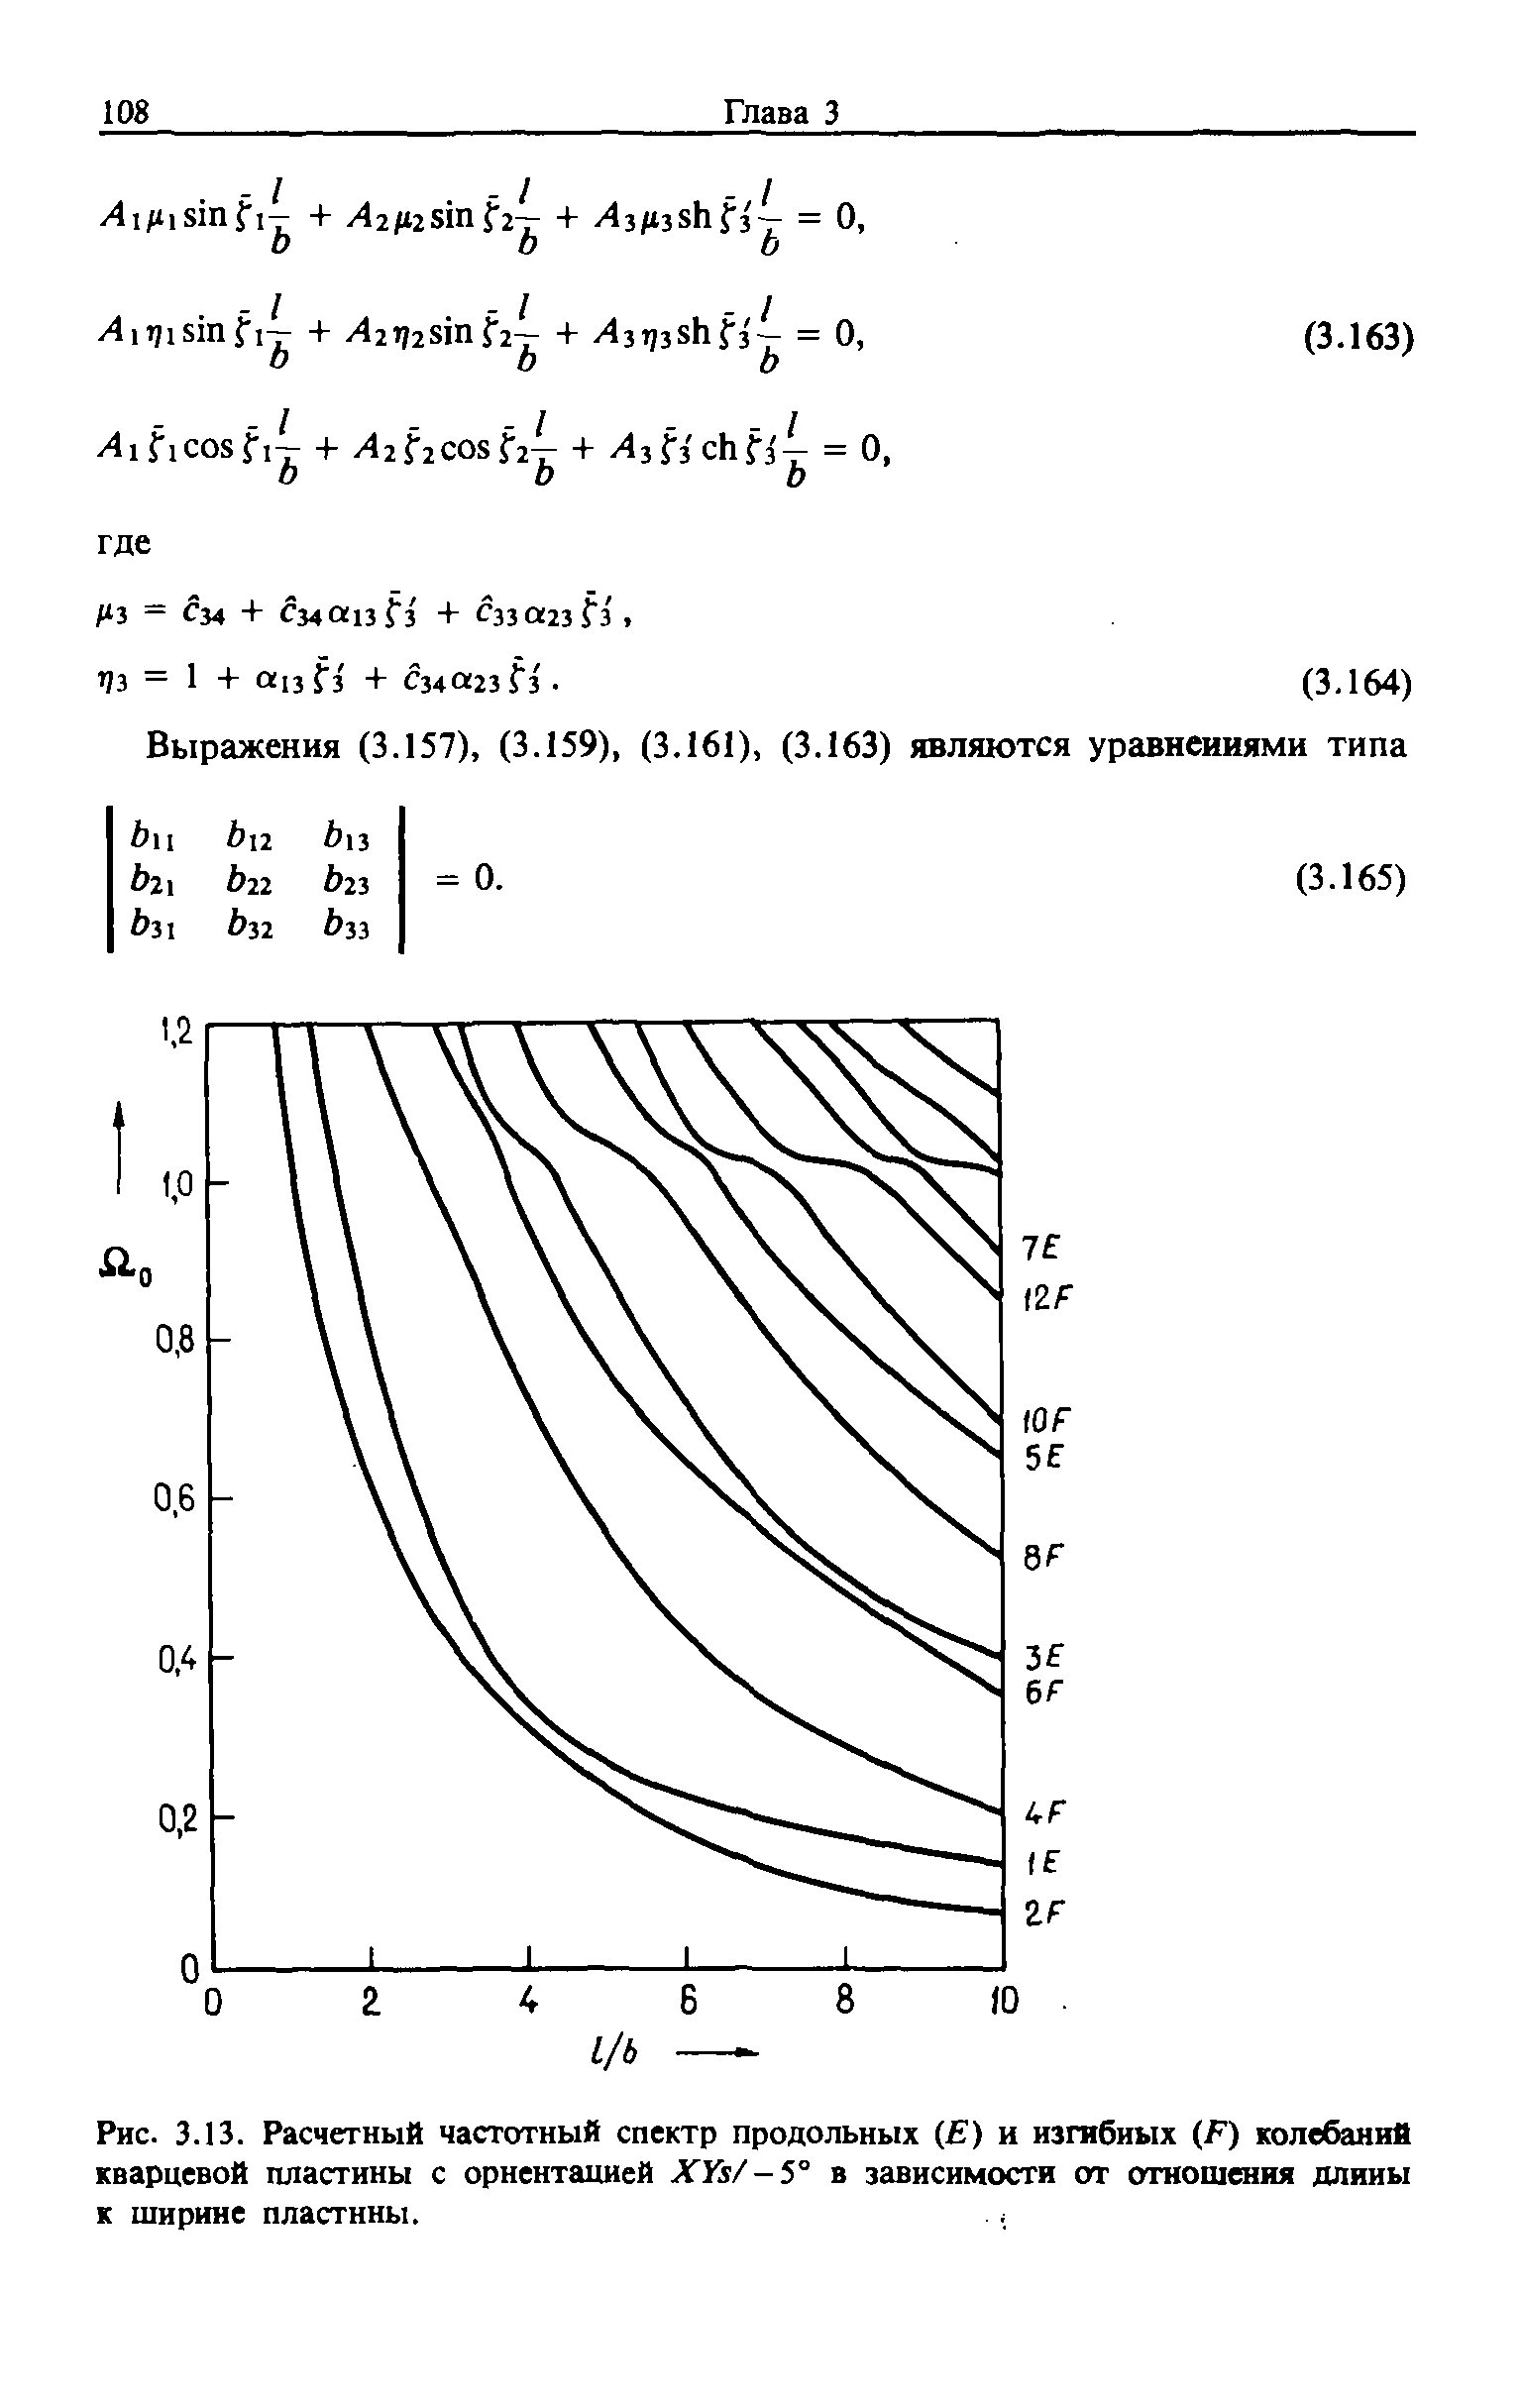 Рис. 3.13. Расчетный <a href="/info/19495">частотный спектр</a> продольных ( ) и изгибных (F) колебаний <a href="/info/422026">кварцевой пластины</a> с ориентацией Х з/-5° в зависимости от отношения длины к ширине пластины.
